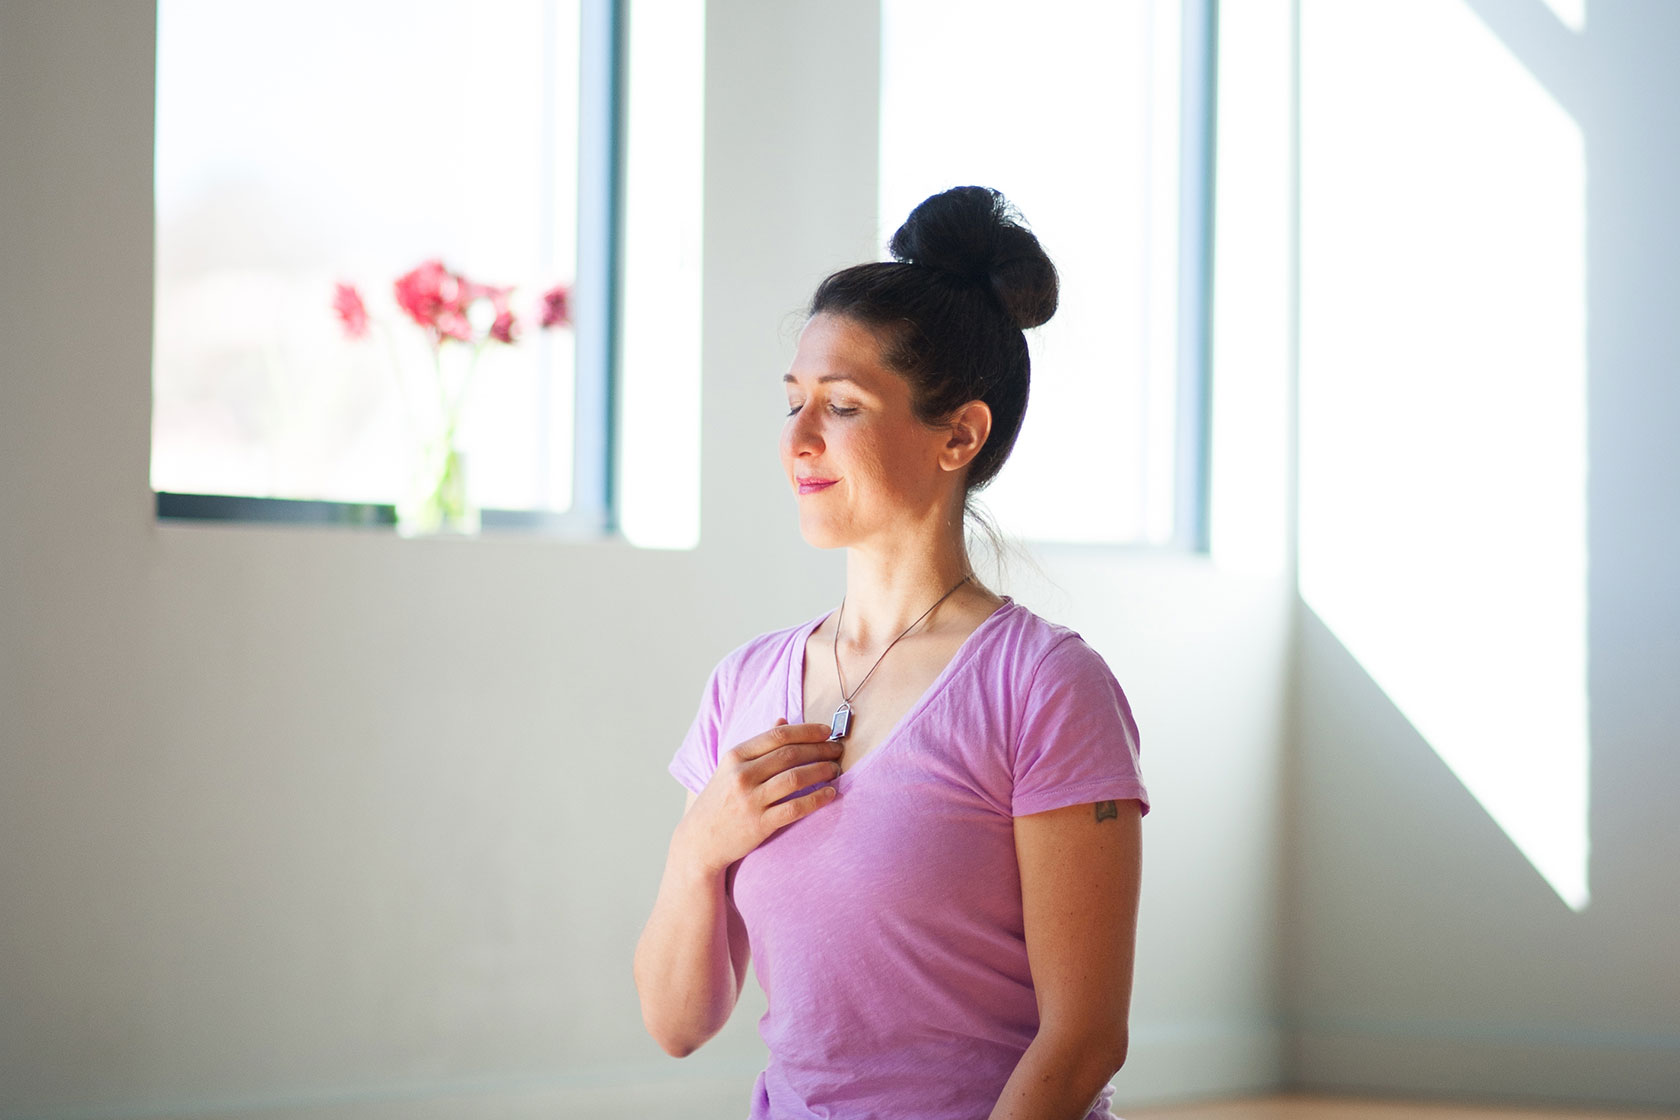 Intro to Heartfull Meditation | Purna Yoga 828